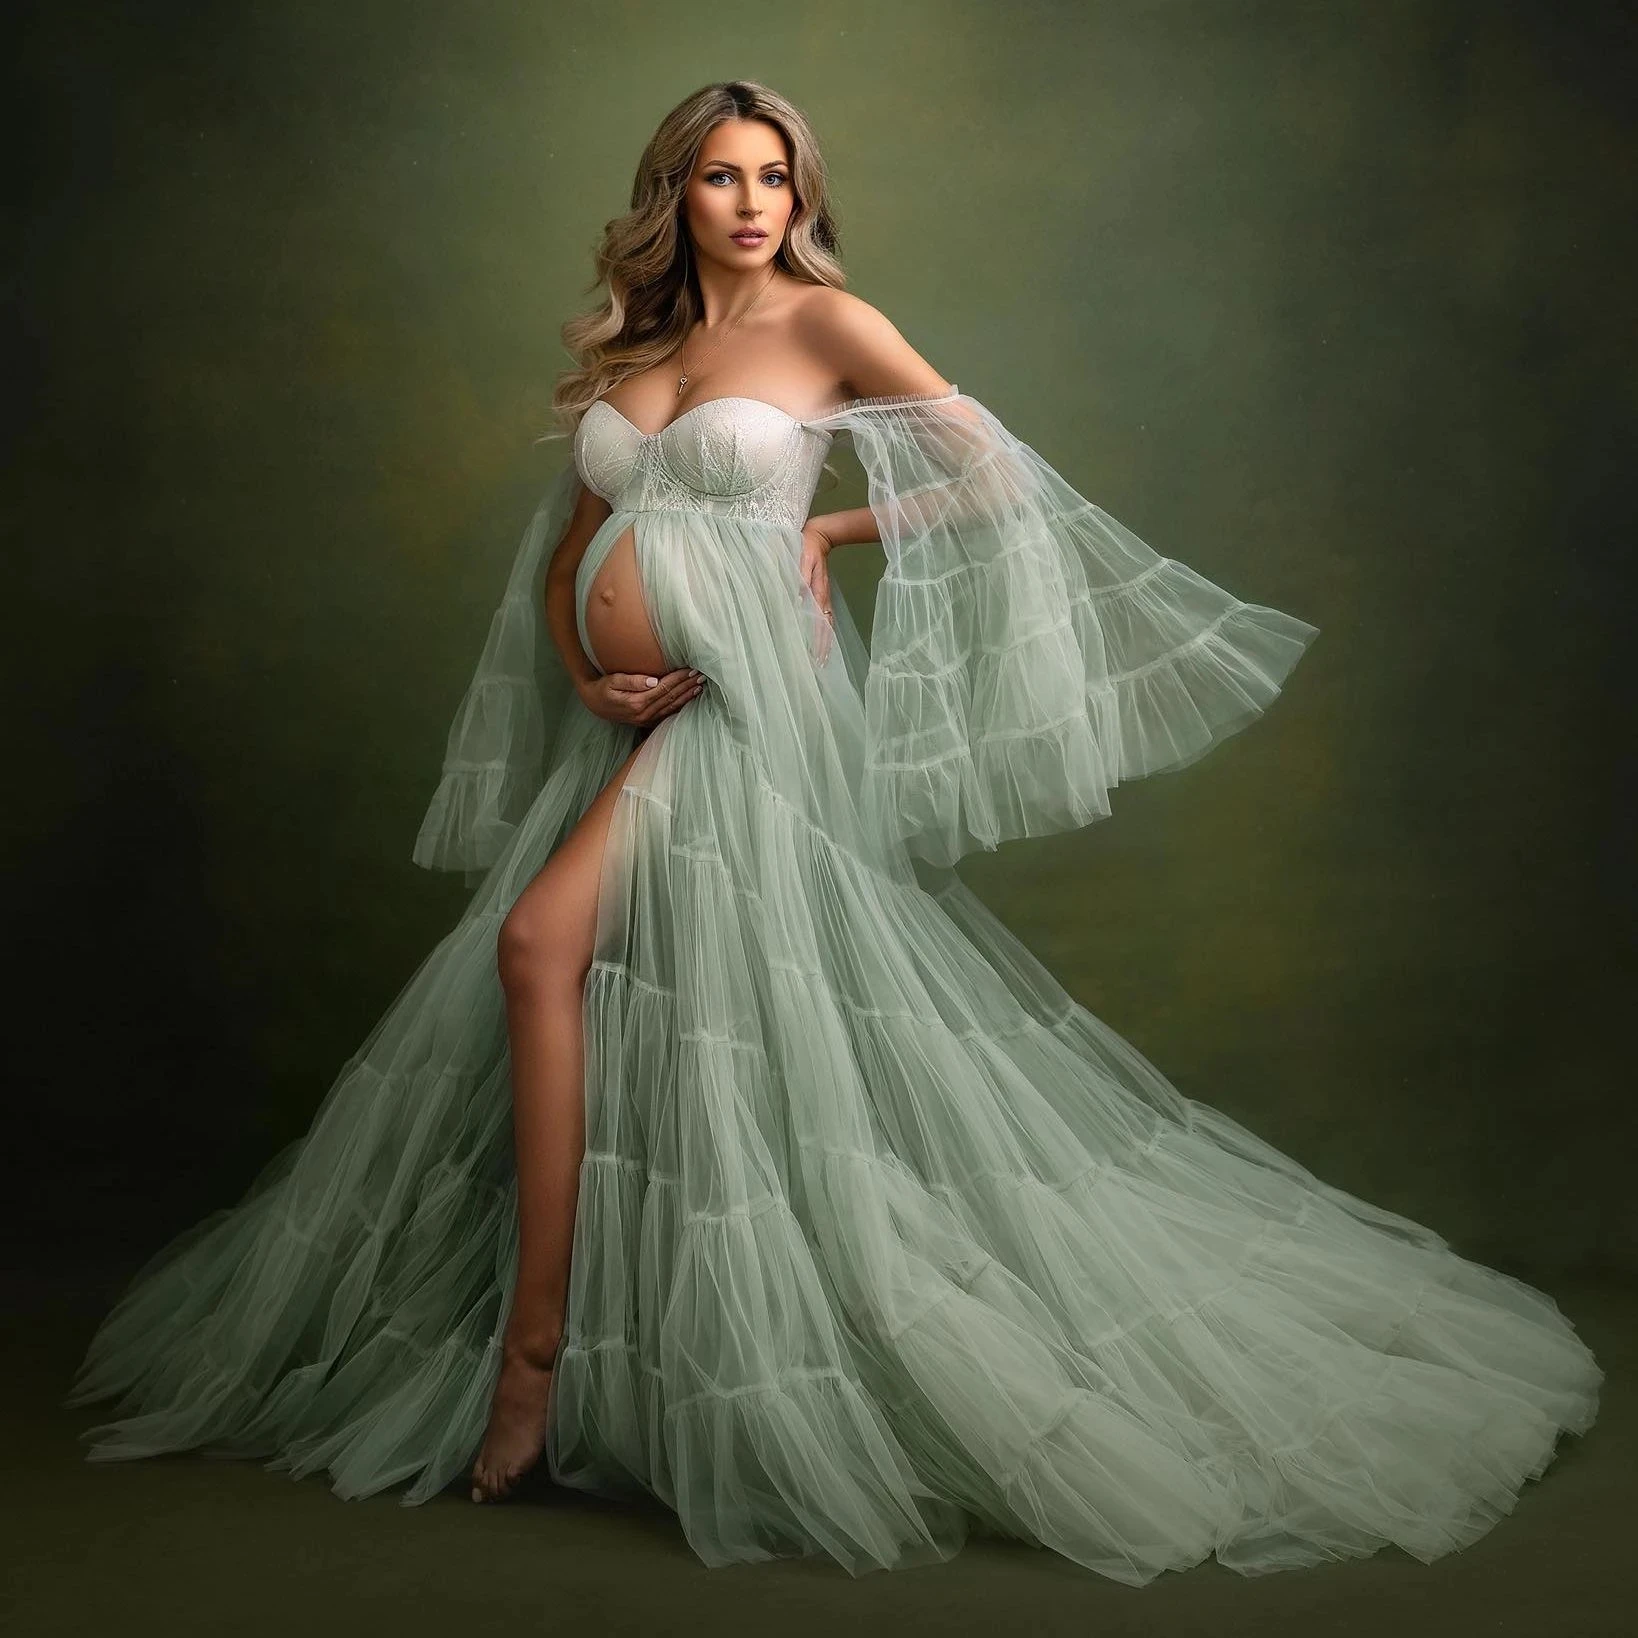 Elegant Mint Green Maternity Gown for Photoshoot or Babyshower Tulle Maternity Dresses Long Bell Sleeves Pregnancy Dress Custom